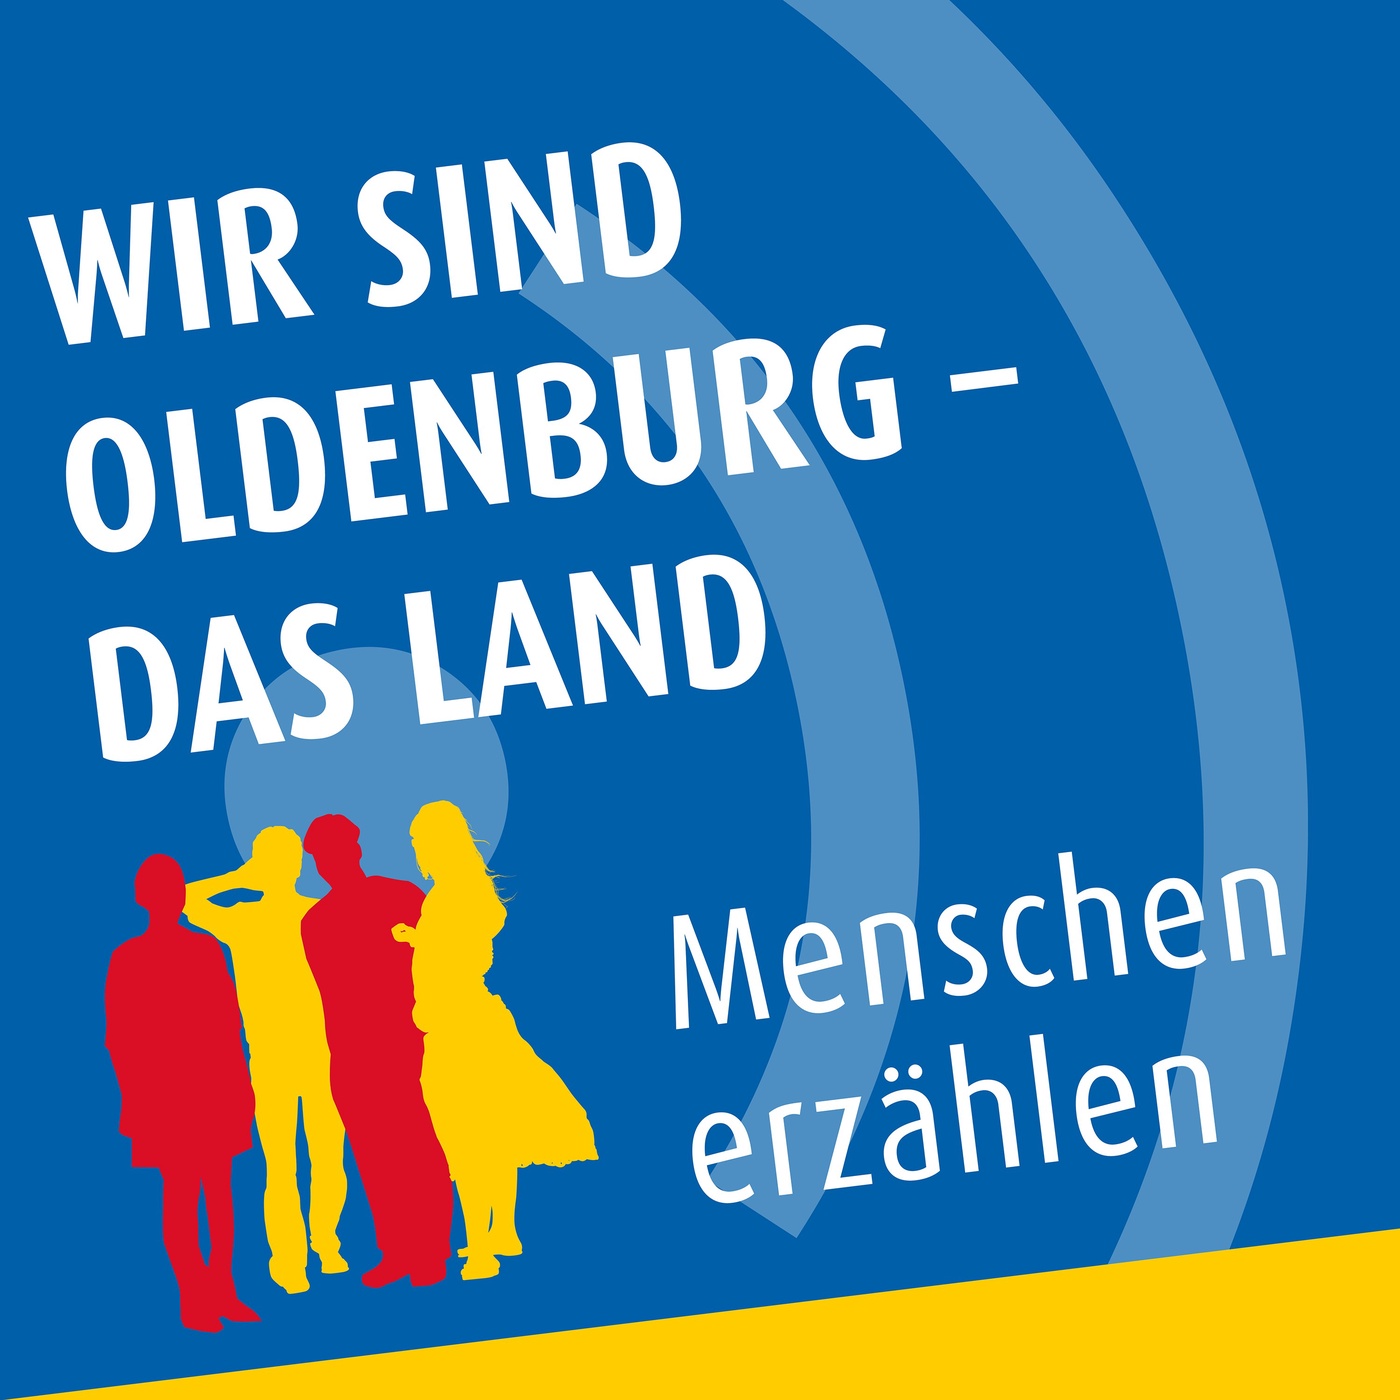 Wir sind Oldenburg das Land - Menschen erzählen